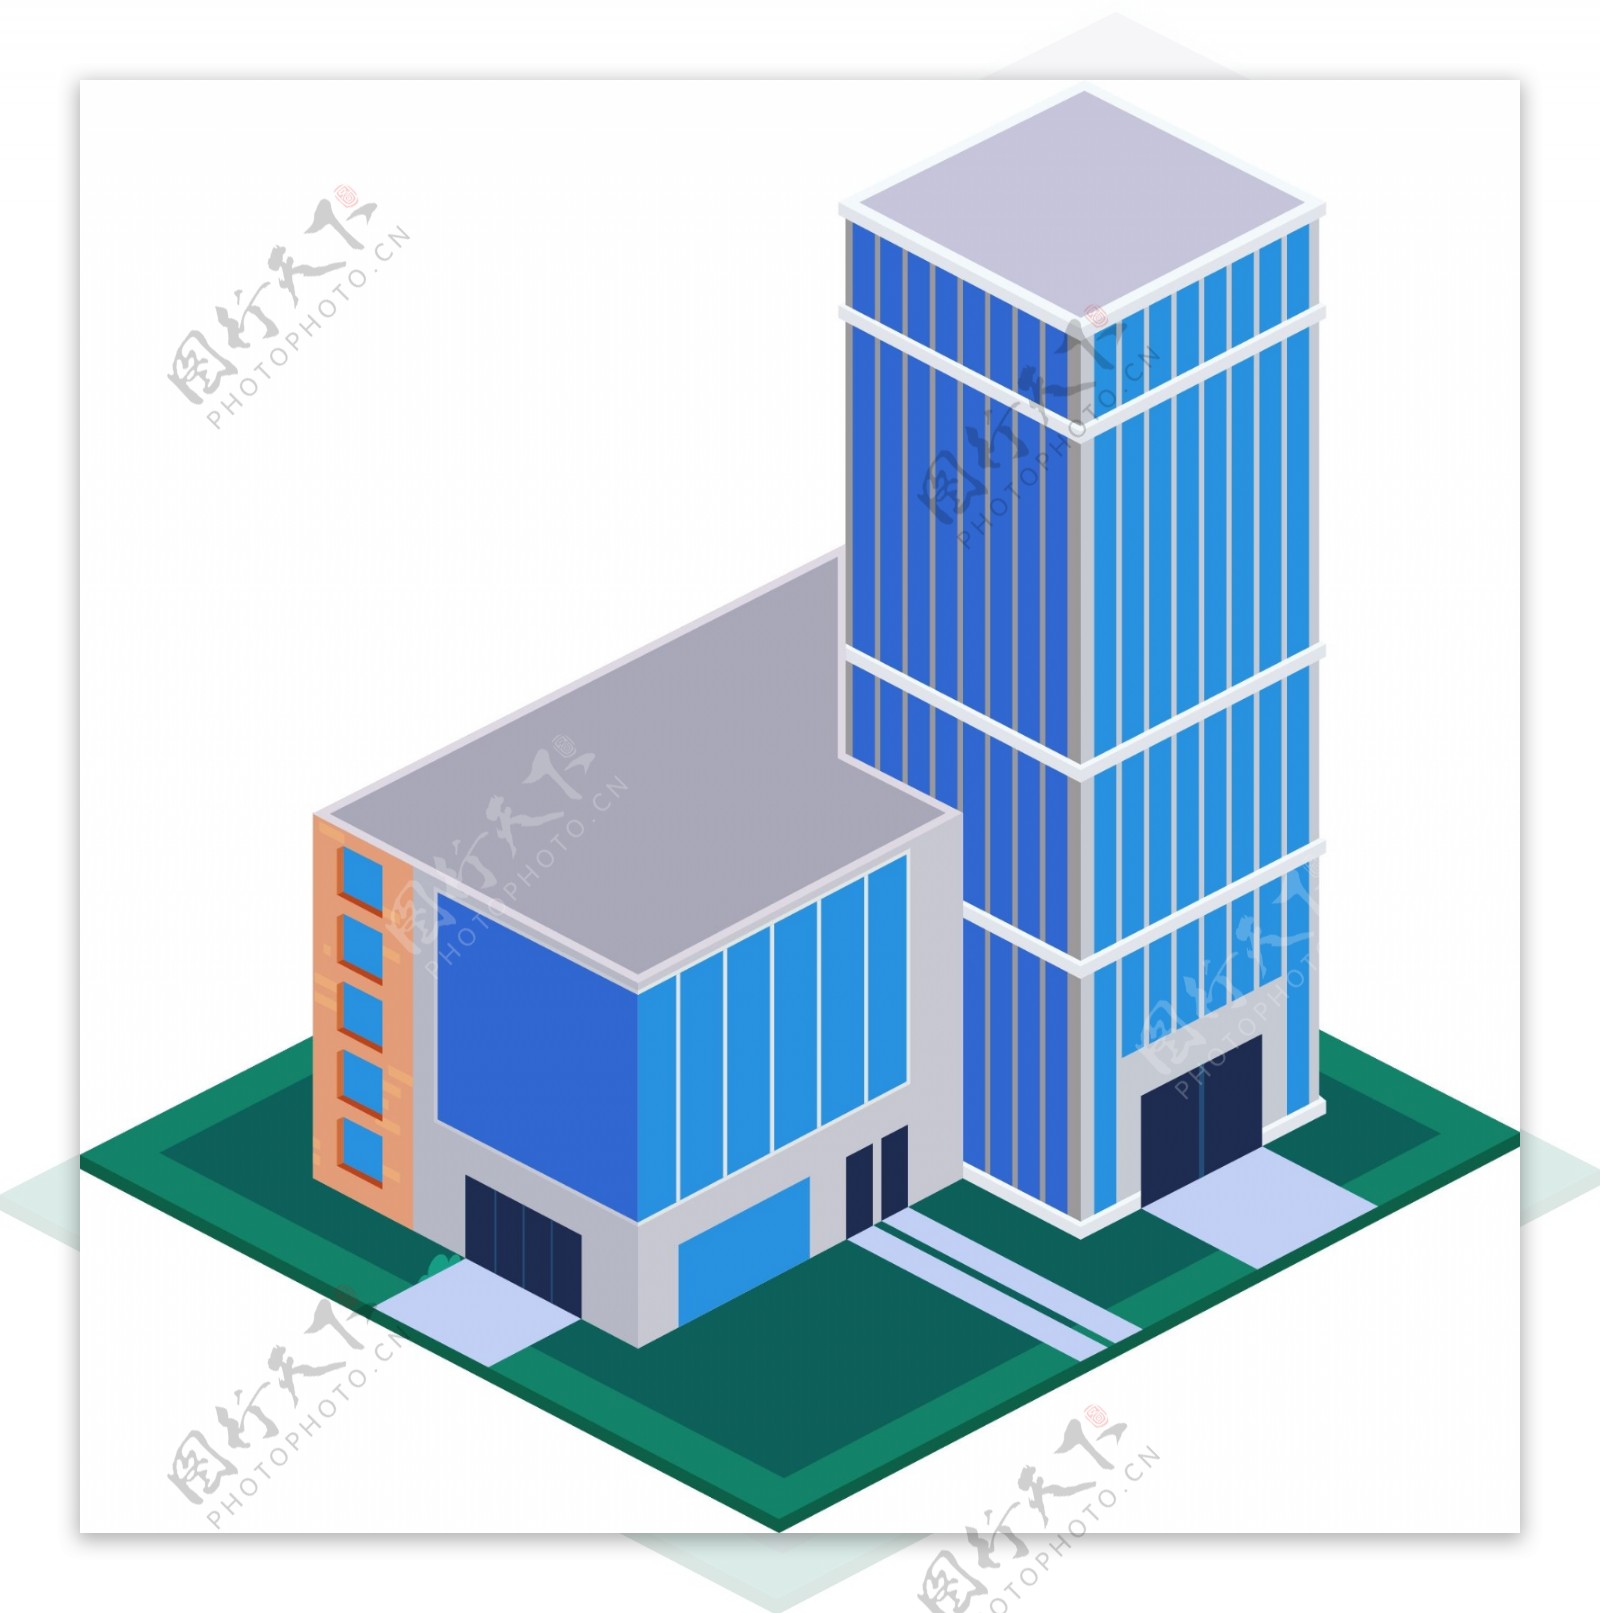 2.5D风格大型商业建筑元素可商用